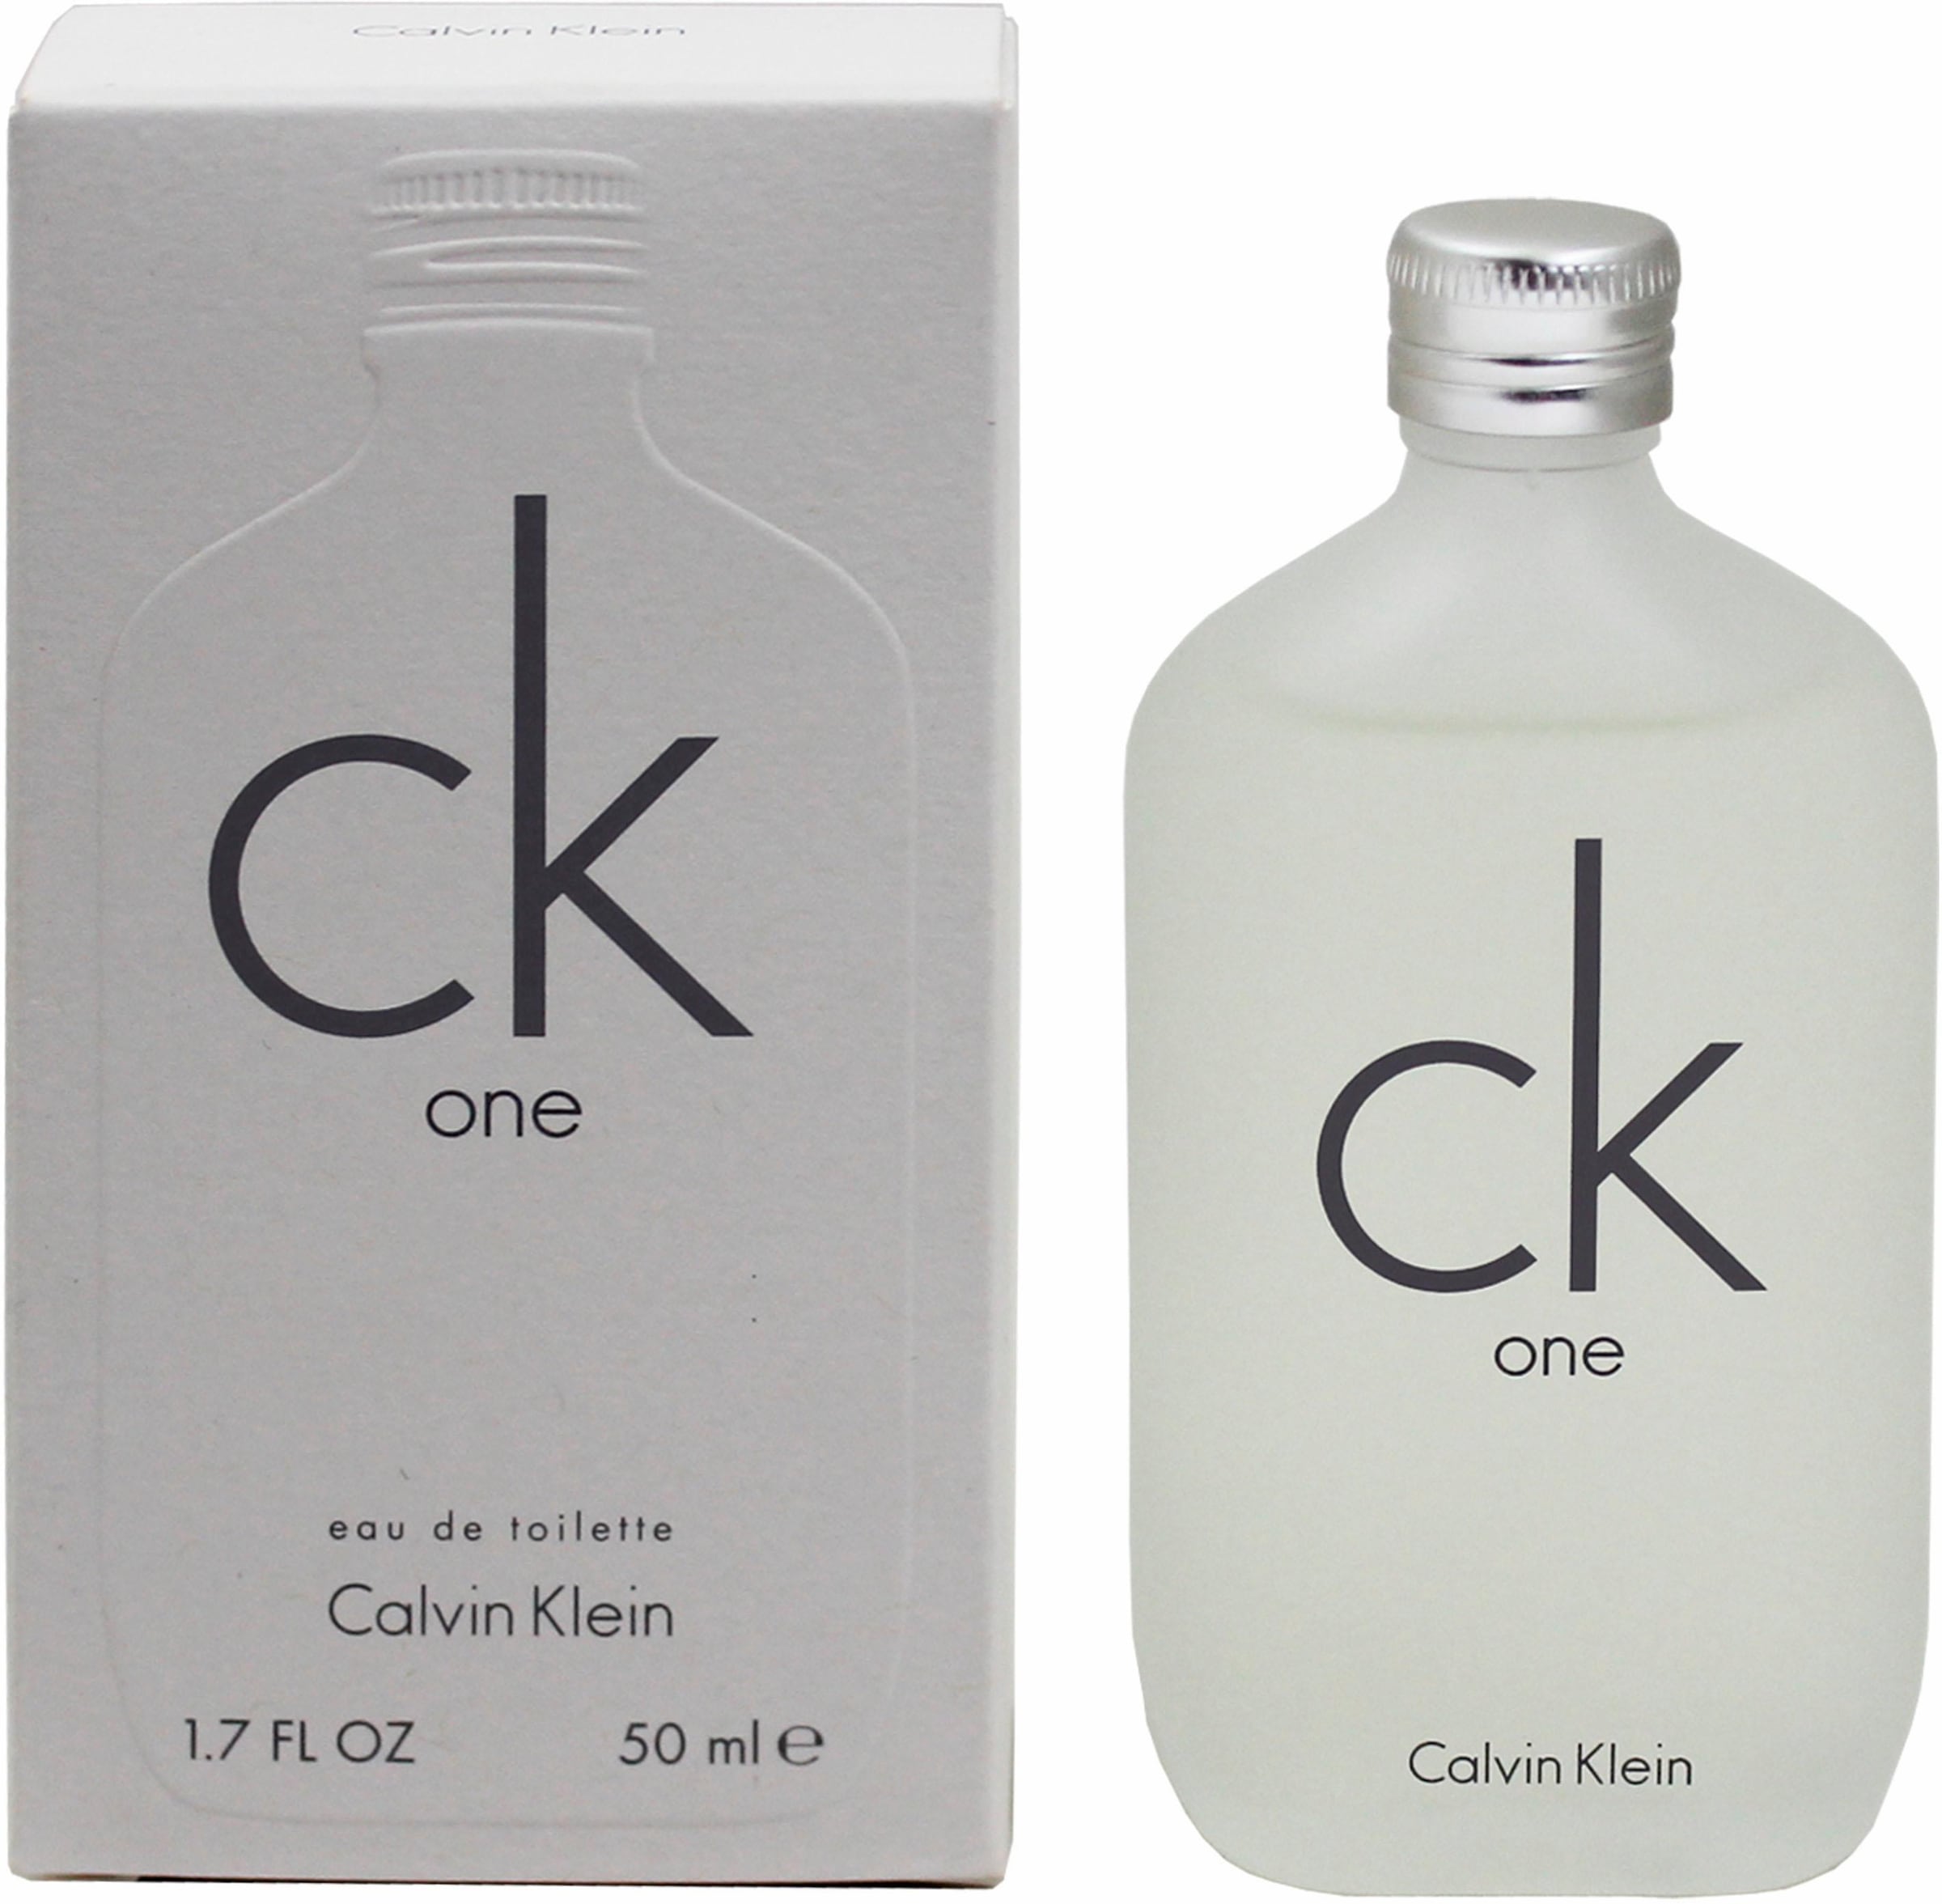 Calvin Klein Duft-Set One«, kaufen »cK online tlg.) (2